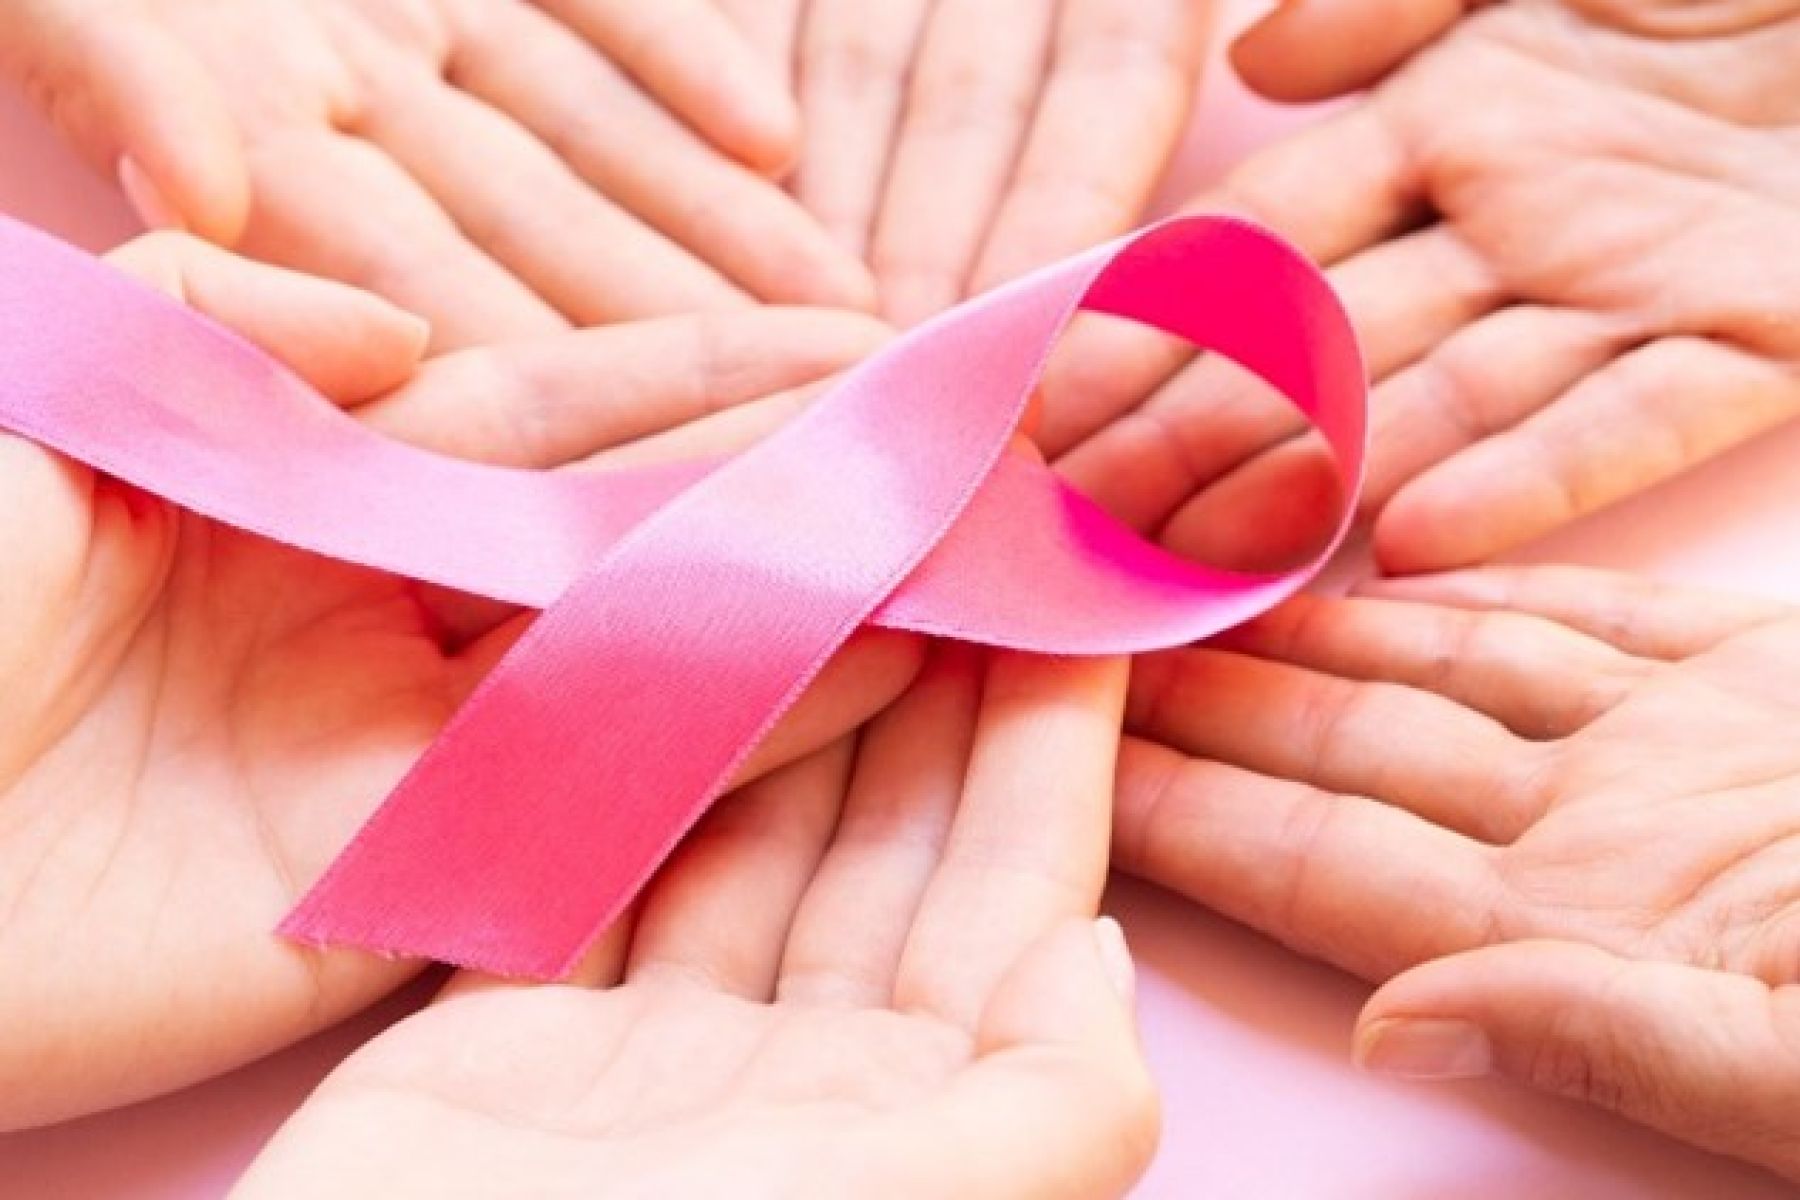 CANCER DE MAMA, más allá de un lazo rosa